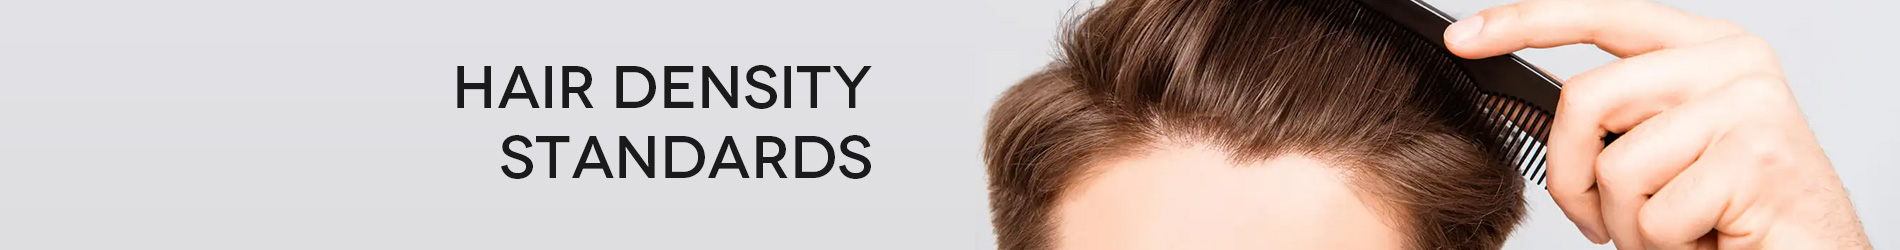 Hair Density Standards